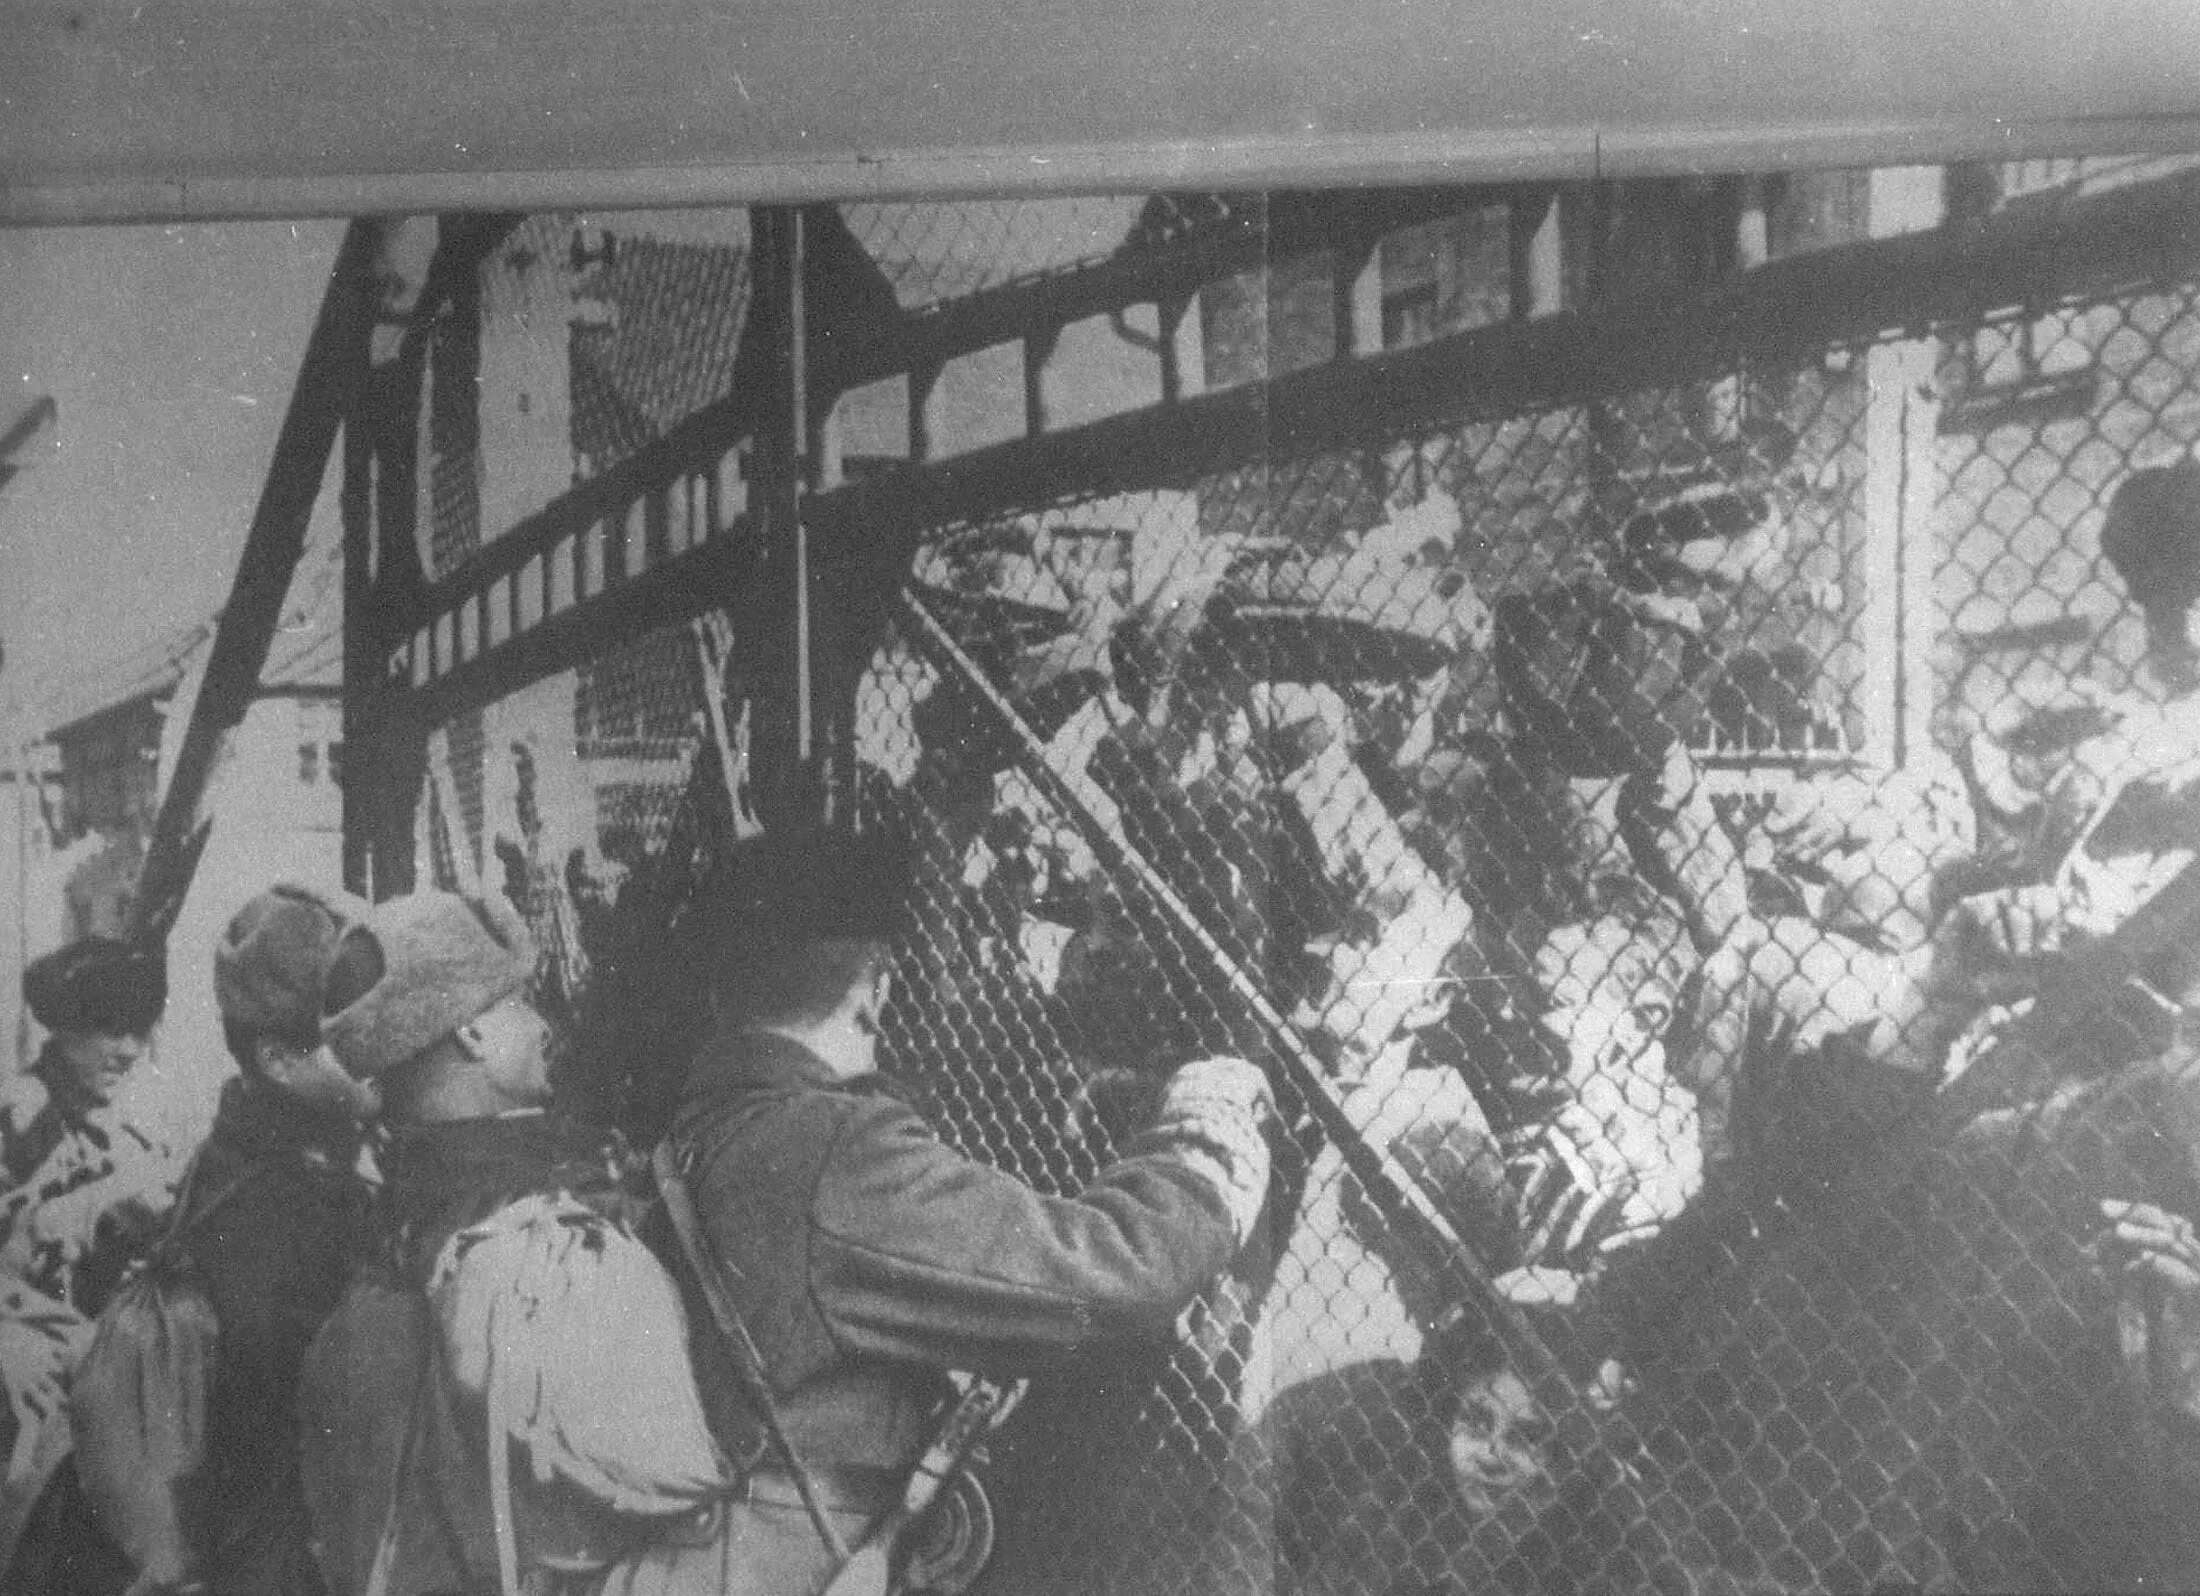 Освобождение фашистских лагерей. 27 Января 1945 освобождение узников концлагеря Освенцим. Освобождение узников Освенцима 1945. Освобождение концлагеря Освенцим красной армией. Освобождение лагеря смерти Освенцим советскими солдатами.